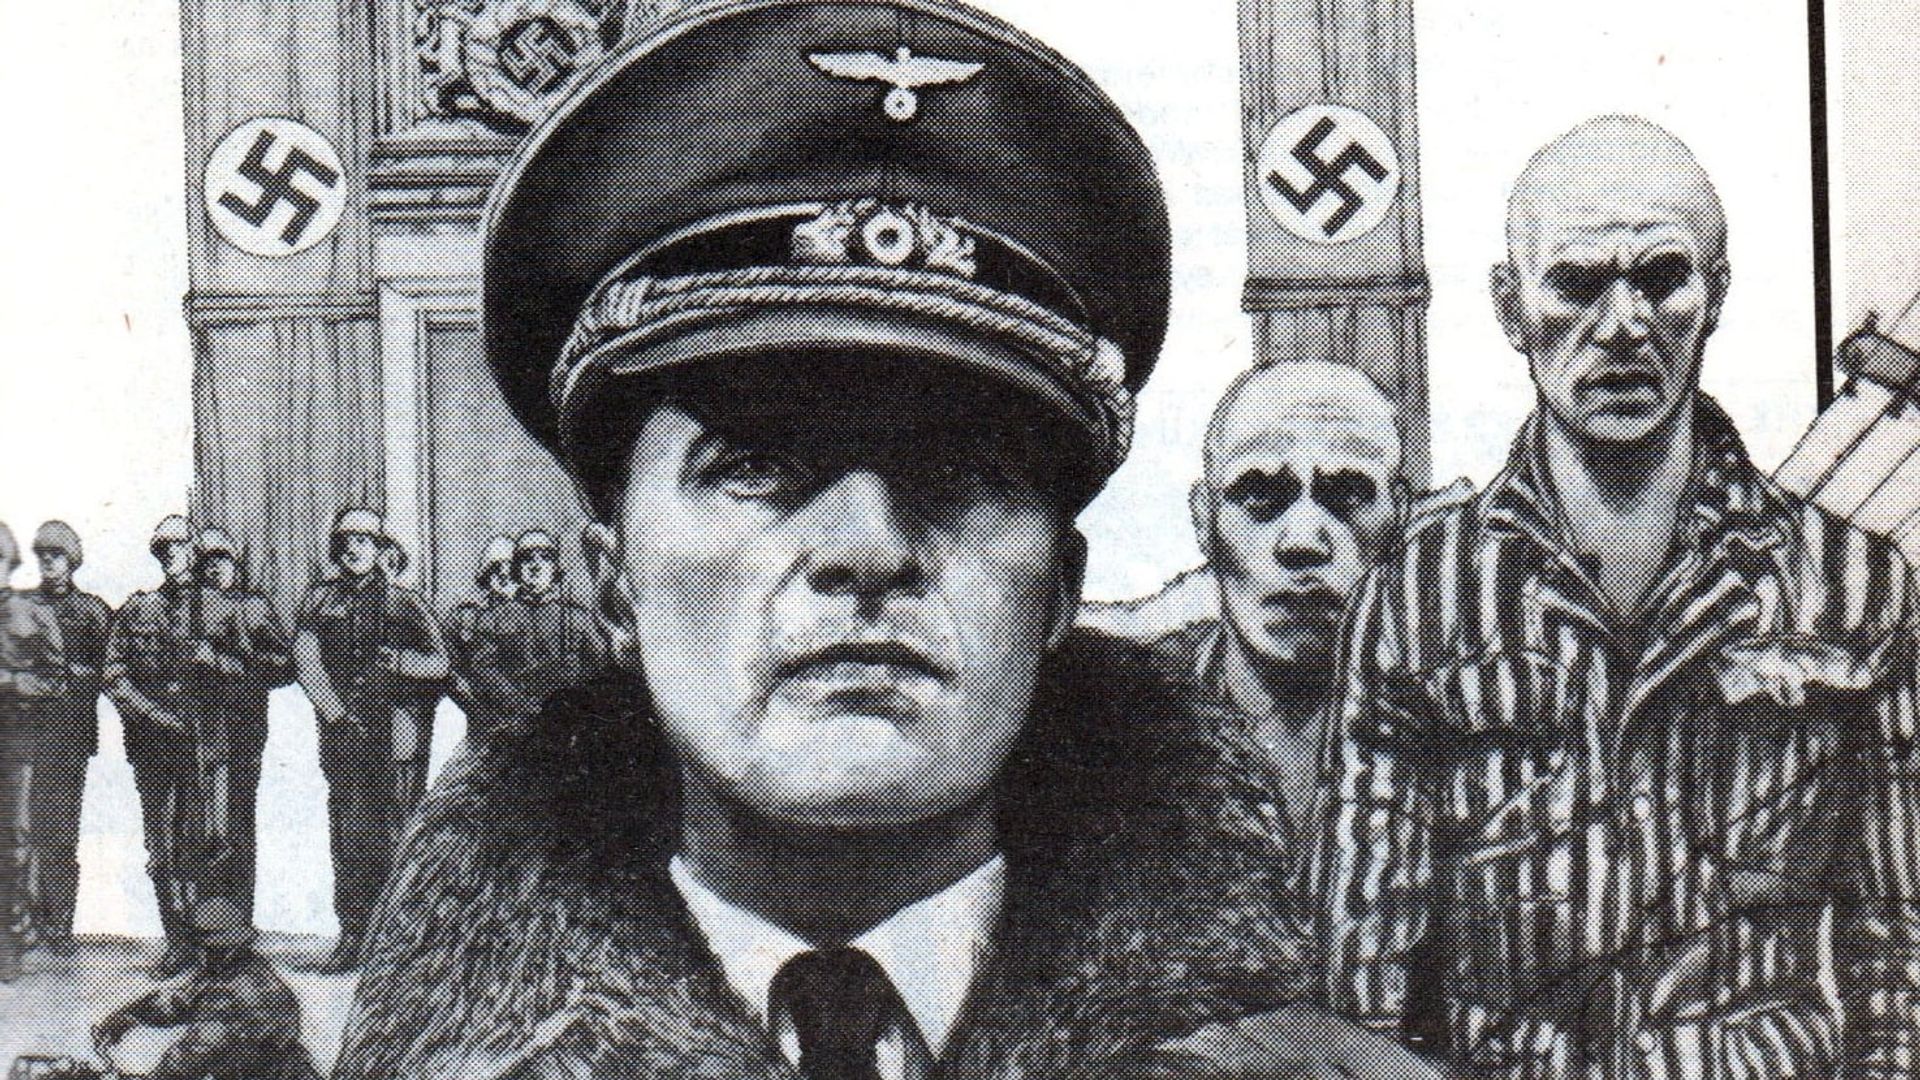 Inside the Third Reich background